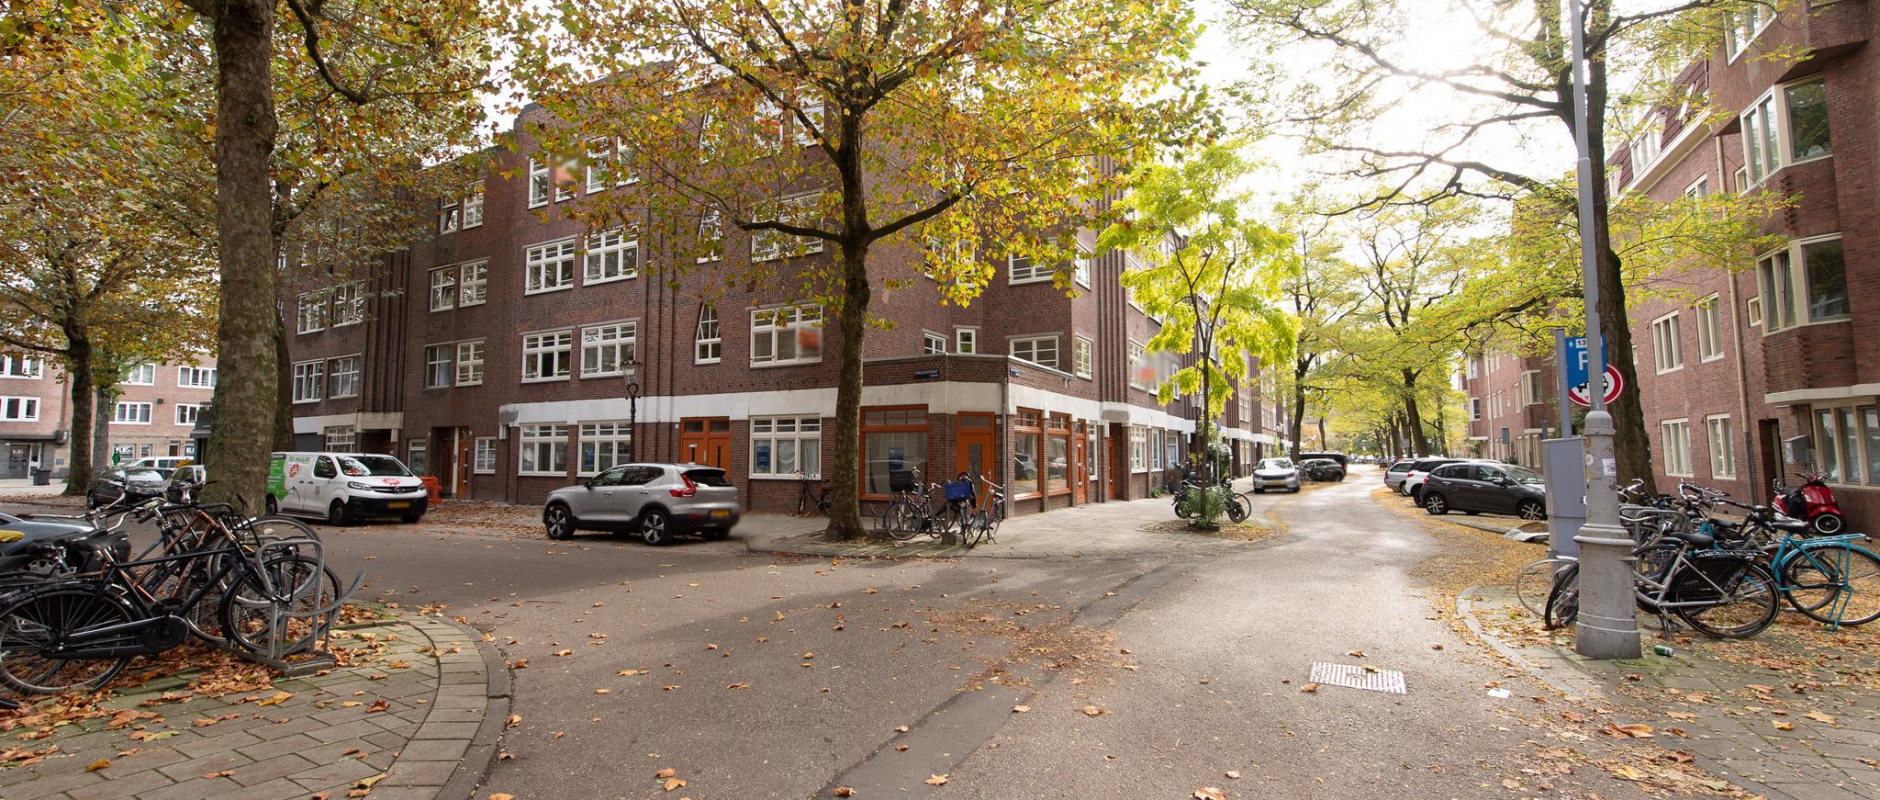 Woning te koop aan de Carillonstraat 2- H te Amsterdam